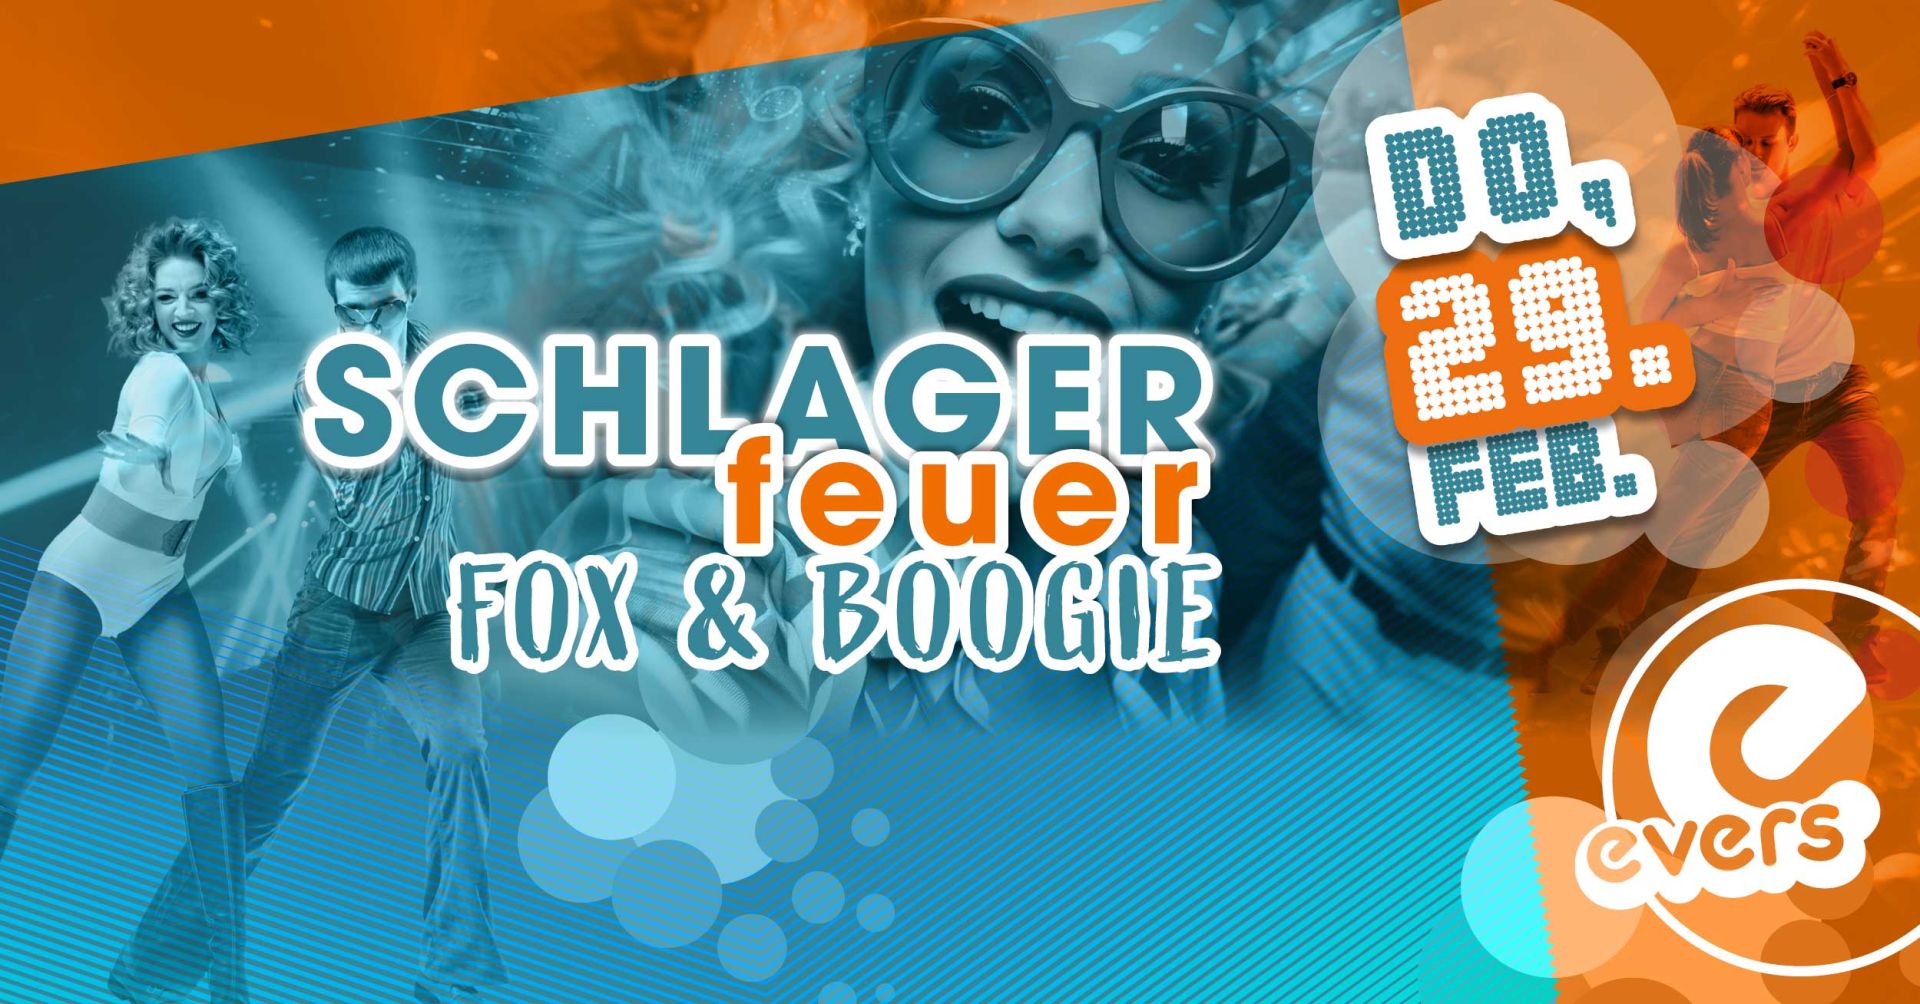 SCHLAGERFEUER, FOX UND BOOGIE | DO 29.02.